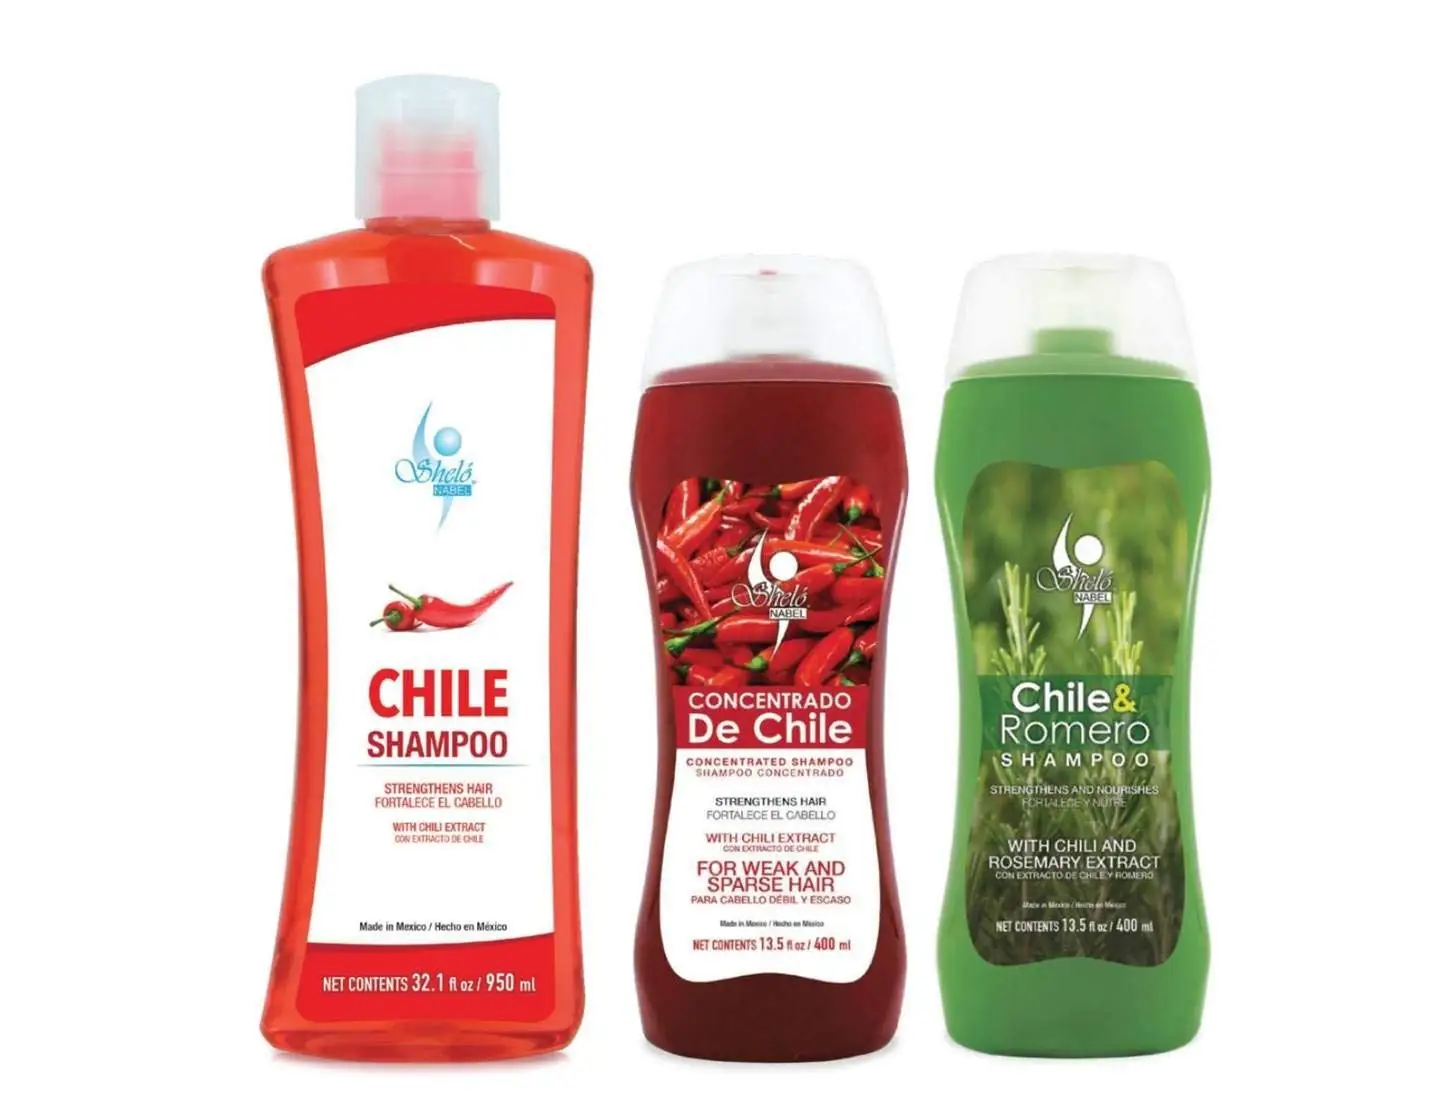 Shampoo de Chile Shelo NABEL Hair Growth Stimulating (Unisex)